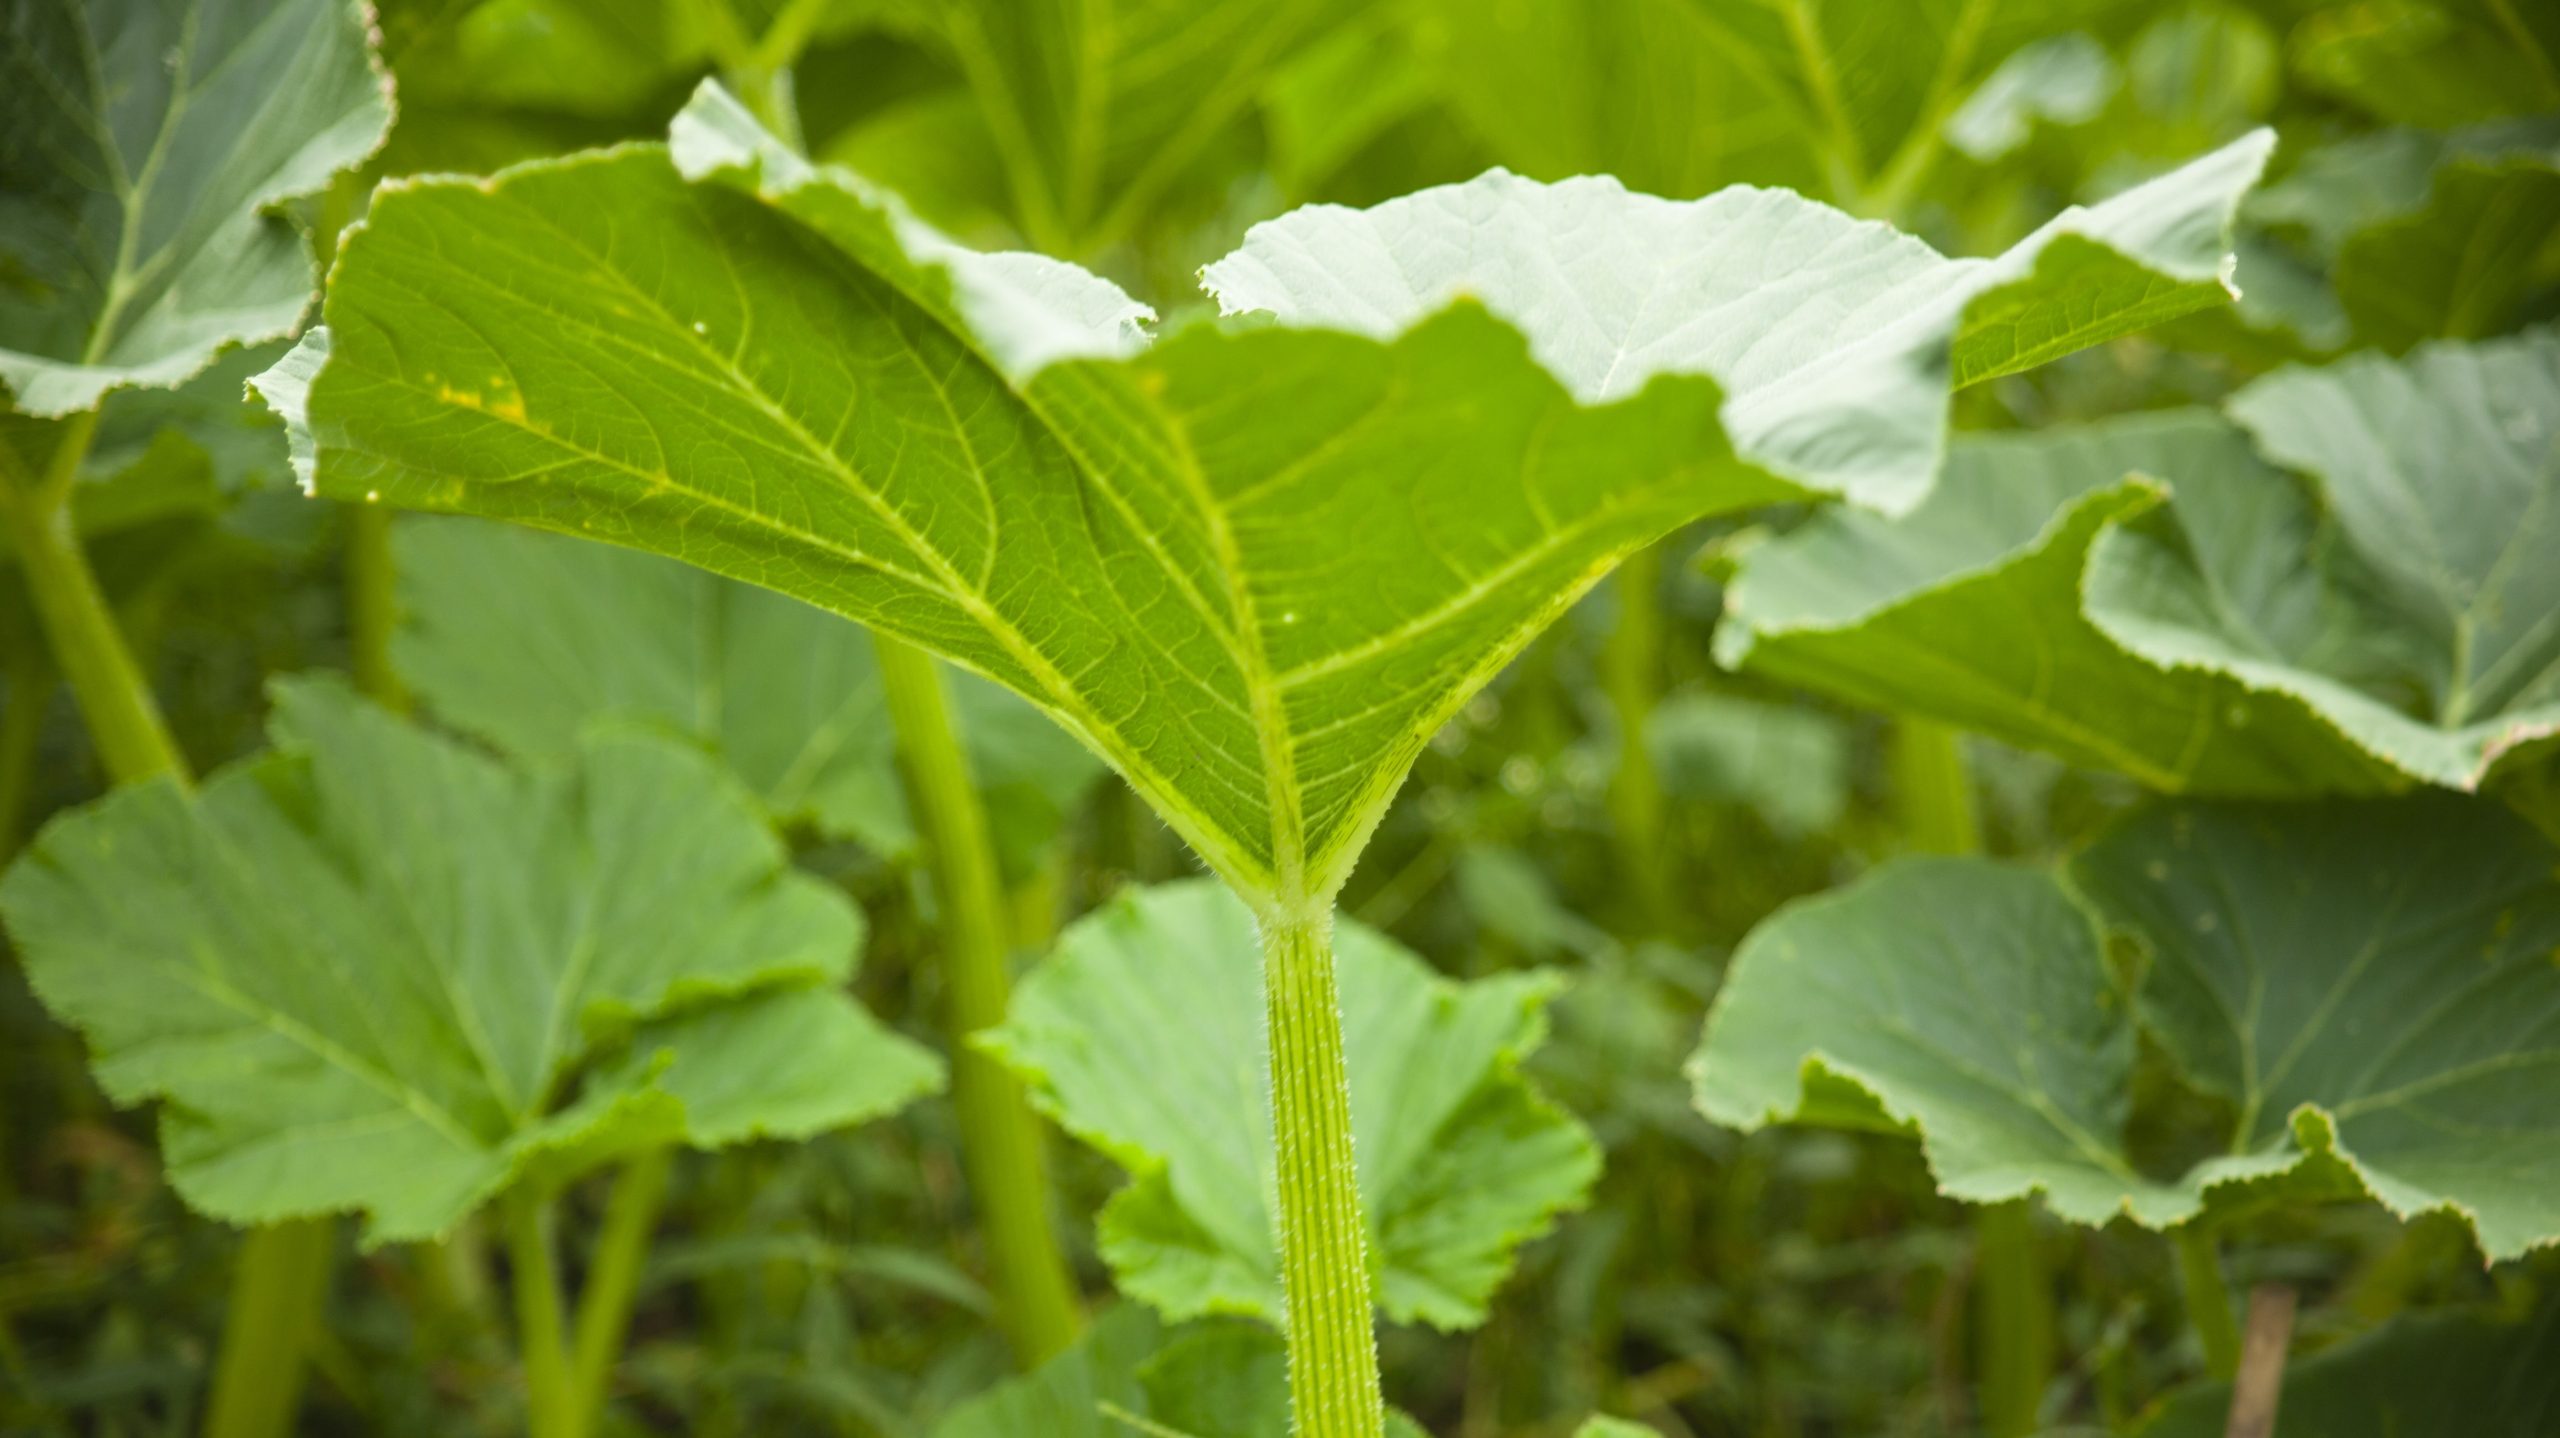 A close-up image of a leaf in a pumpkin patch